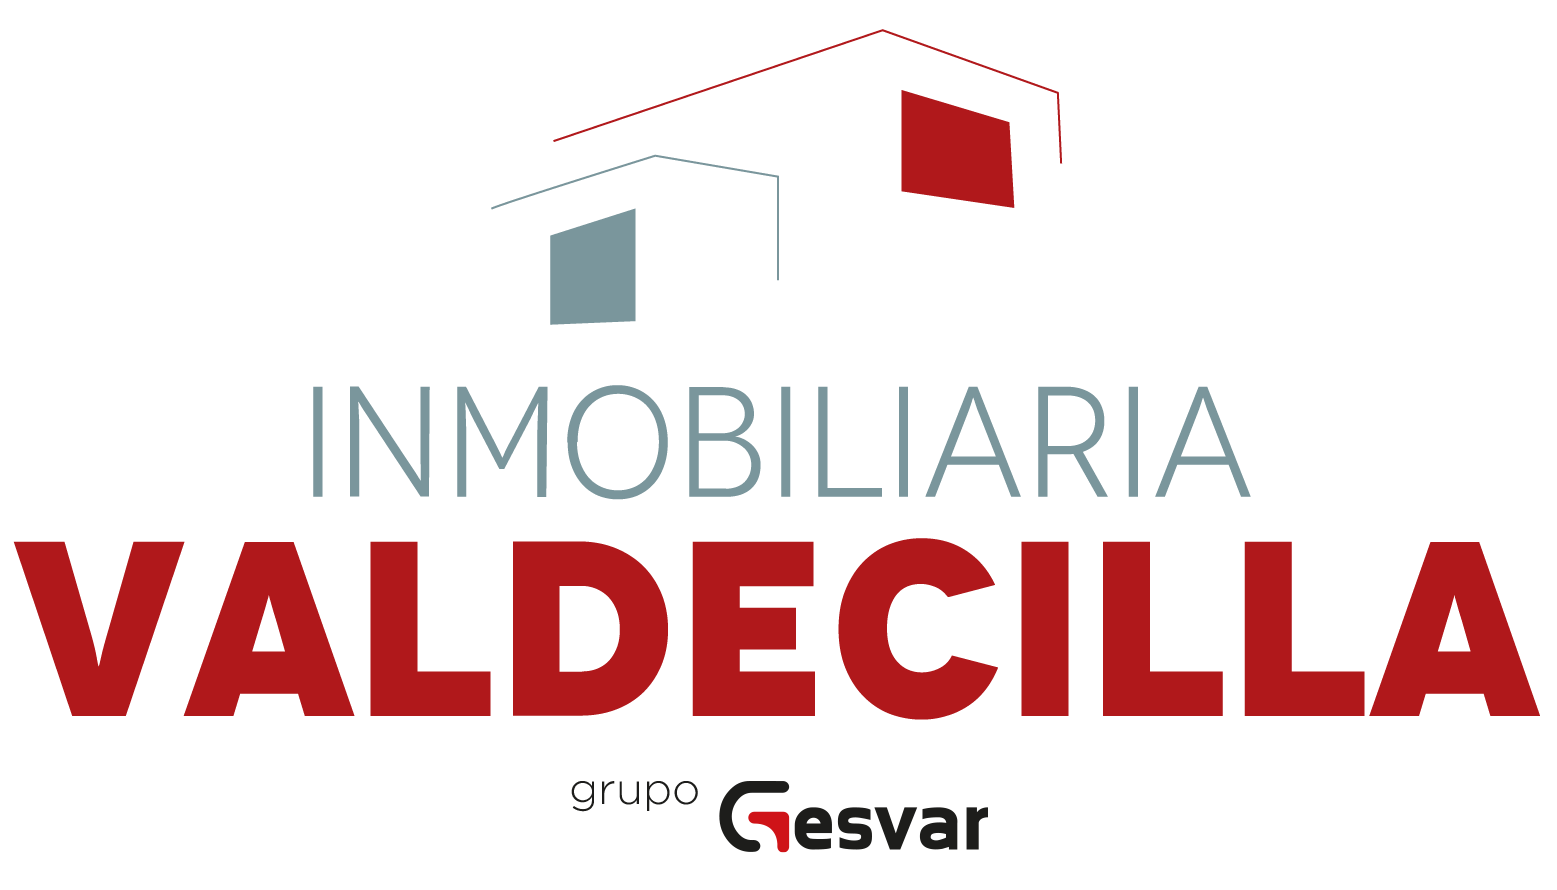 Logo Inmobiliaria Valdecilla (grupo Gesvar)